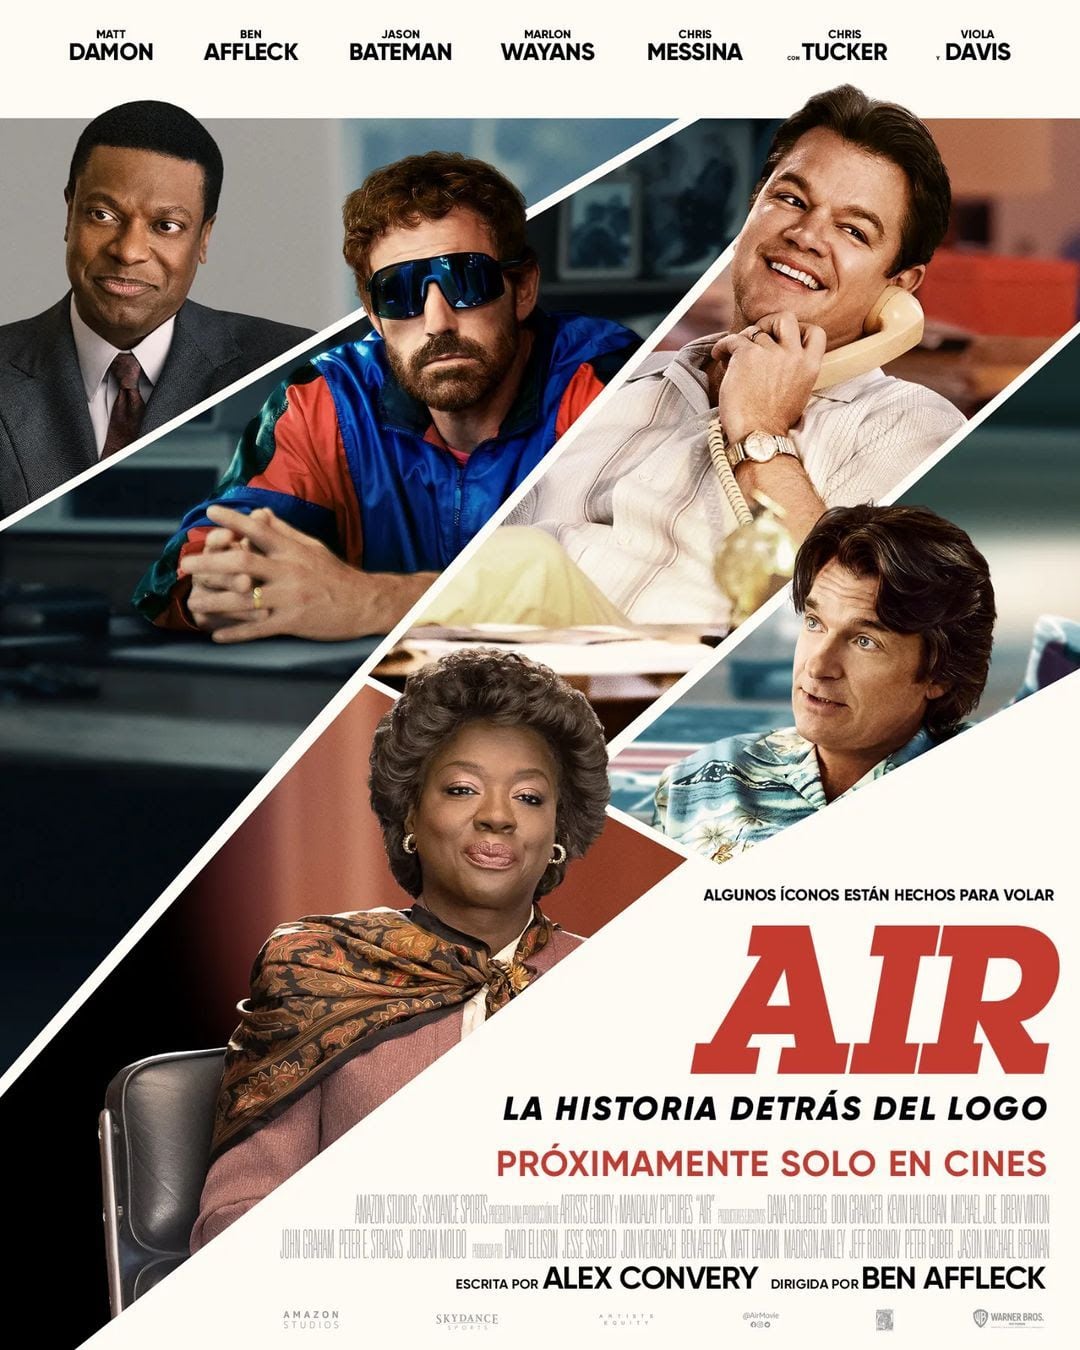 'Air: La historia detrás del logo' se estrena en Colombia. Es una película que hilvana de manera interesante varios elementos y puede ser considerada para toda la familia (con solo un par de madrazos desafiantes).